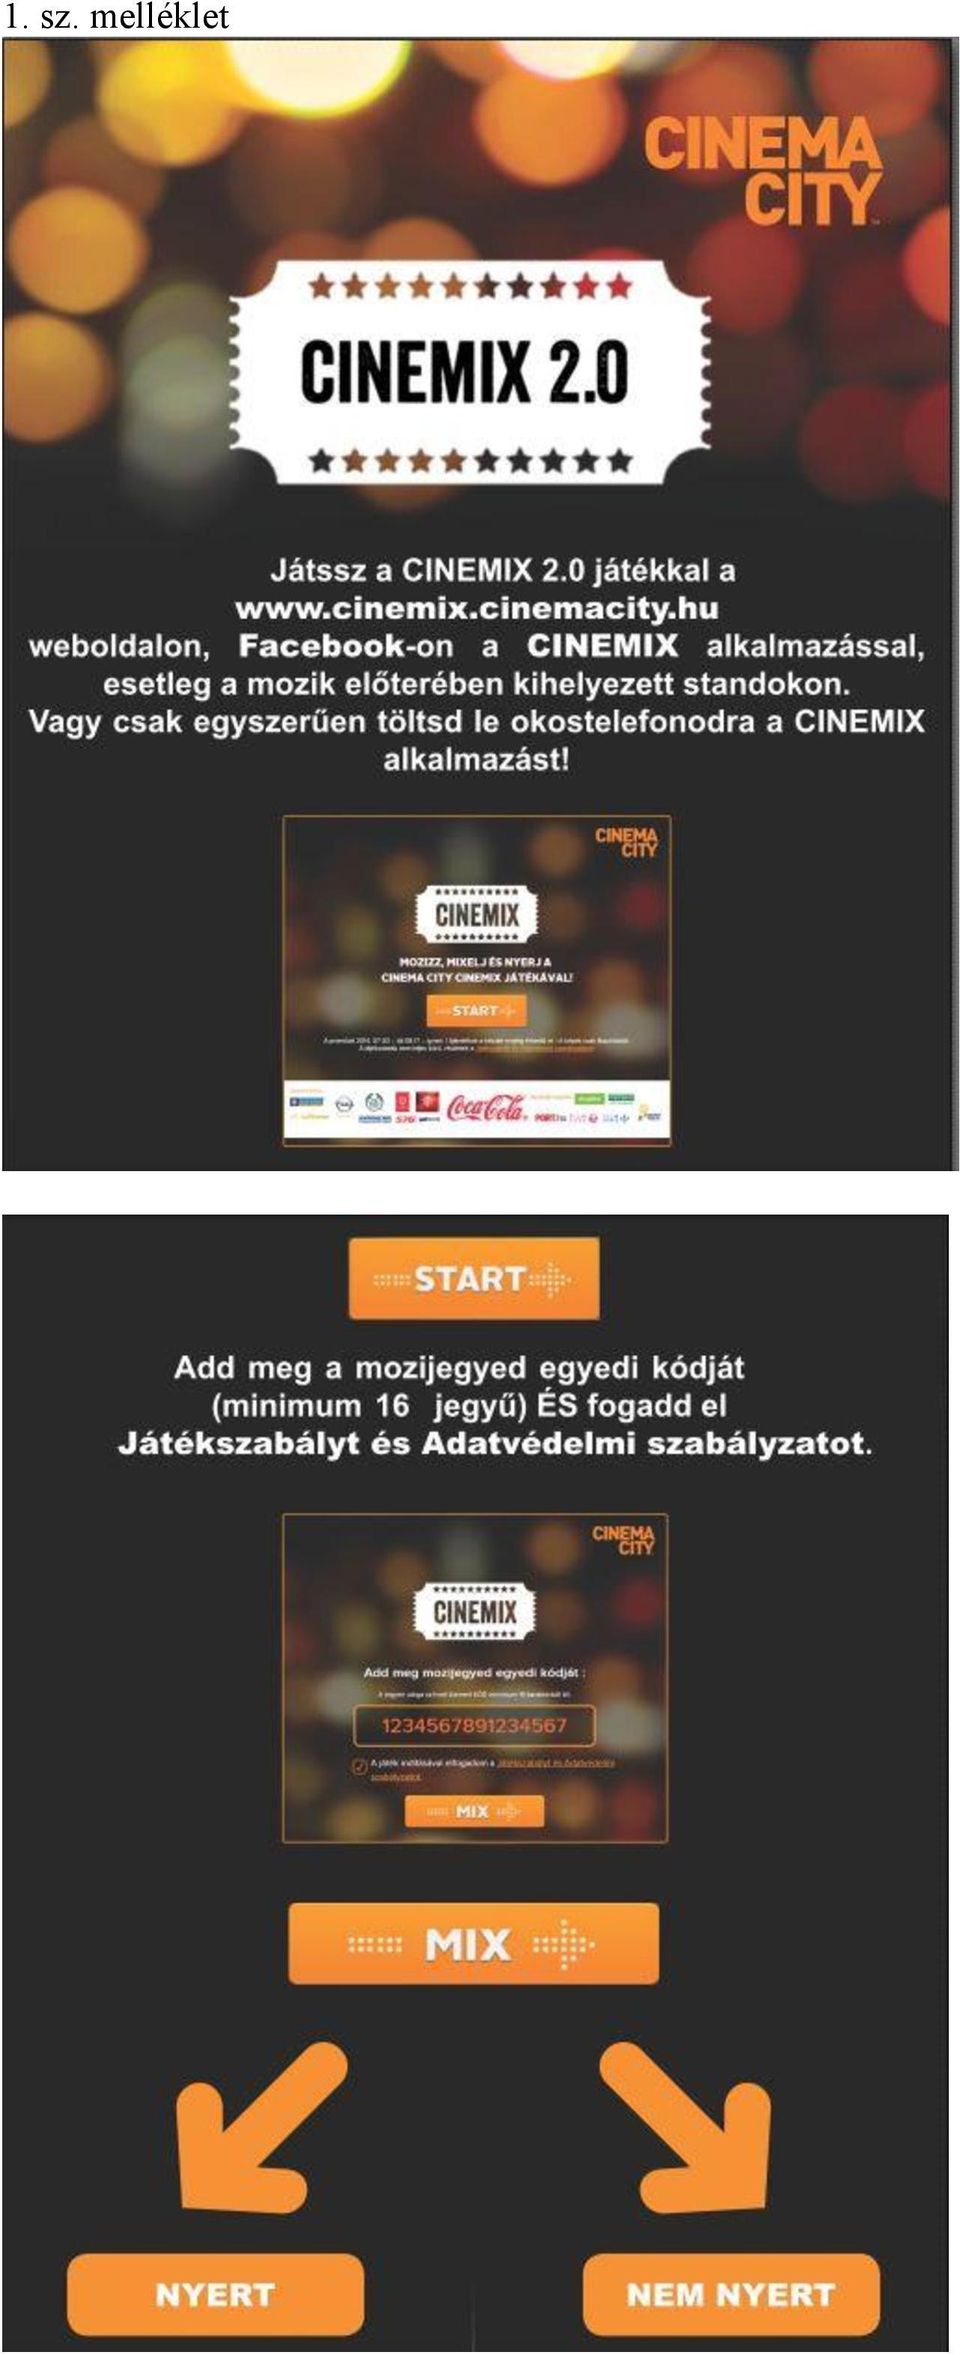 CINEMA CITY CINEMIX 2.0 elnevezésű promóció HIVATALOS JÁTÉKSZABÁLYA ÉS  ADATKEZELÉSI SZABÁLYZATA - PDF Ingyenes letöltés